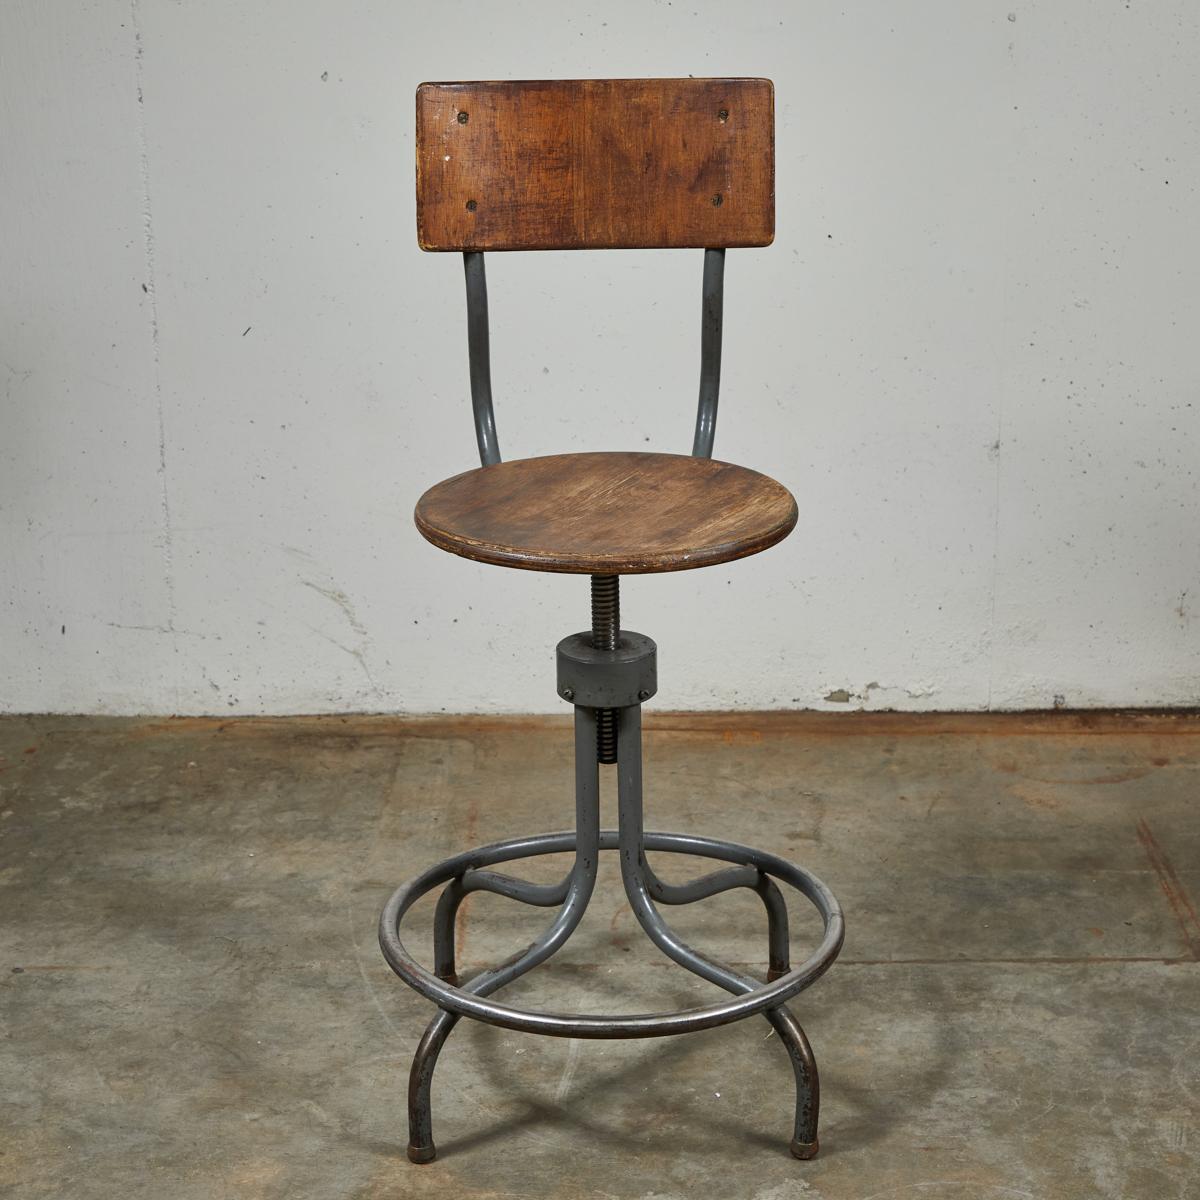 Tabouret pivotant en bois industriel français des années 1940 avec base réglable en acier. Dotée d'une assise circulaire plate et d'un dossier rectangulaire incurvé, la chaise repose sur une base araignée à quatre pieds enjoints inscrits dans un